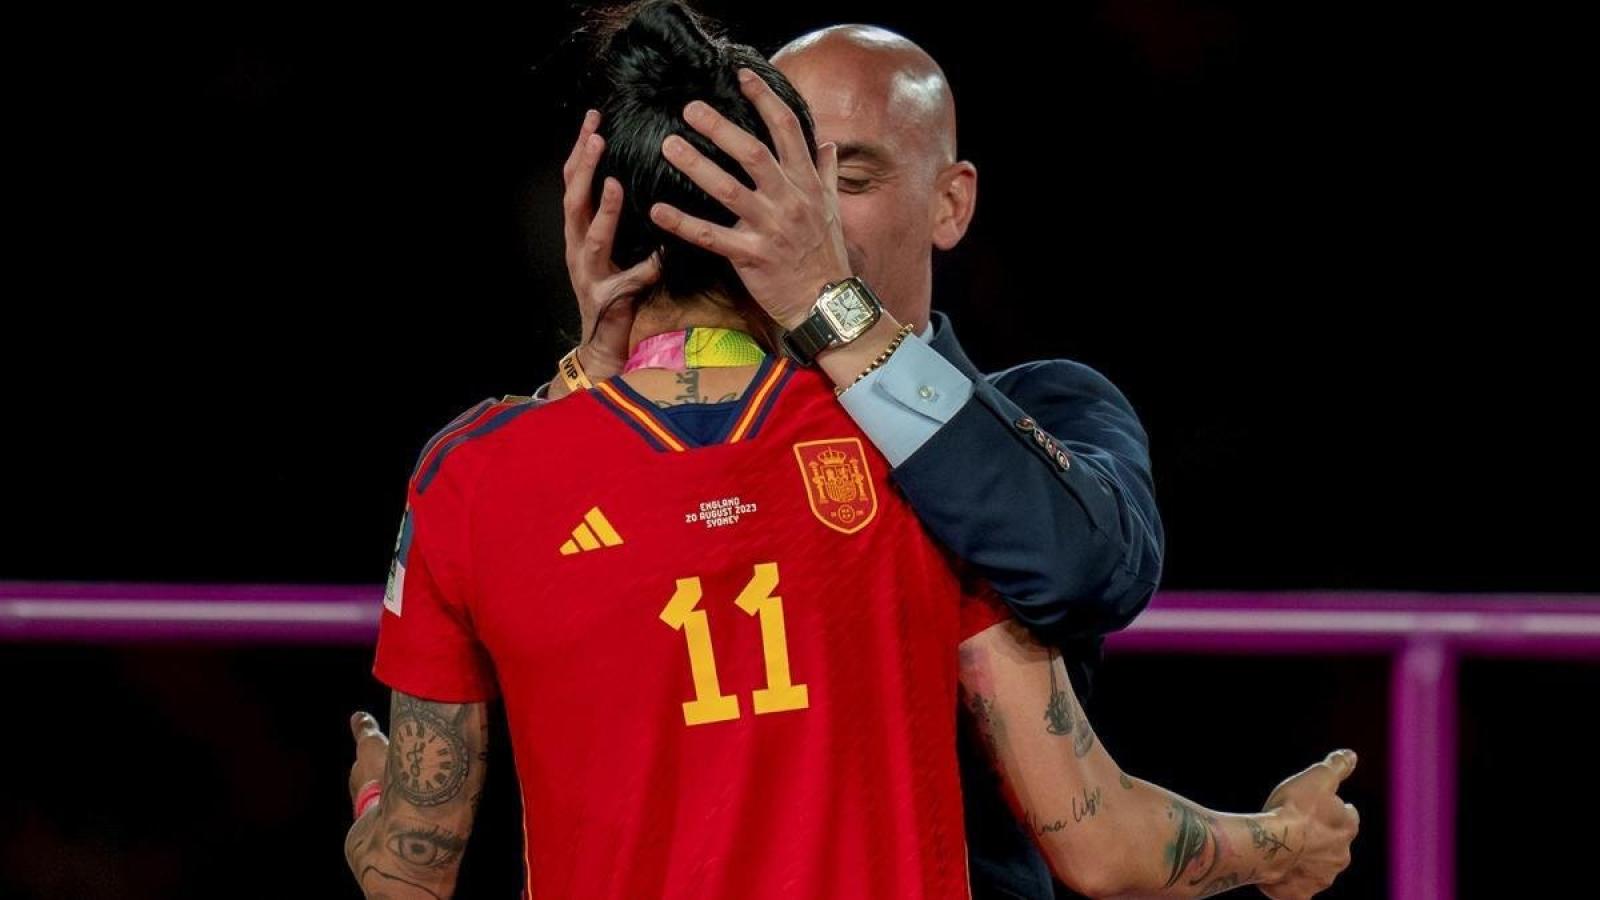 Imagen Un eufórico Luis Rubiales besa a Jenni Hermoso sin su consentimiento tras la final del Mundial.